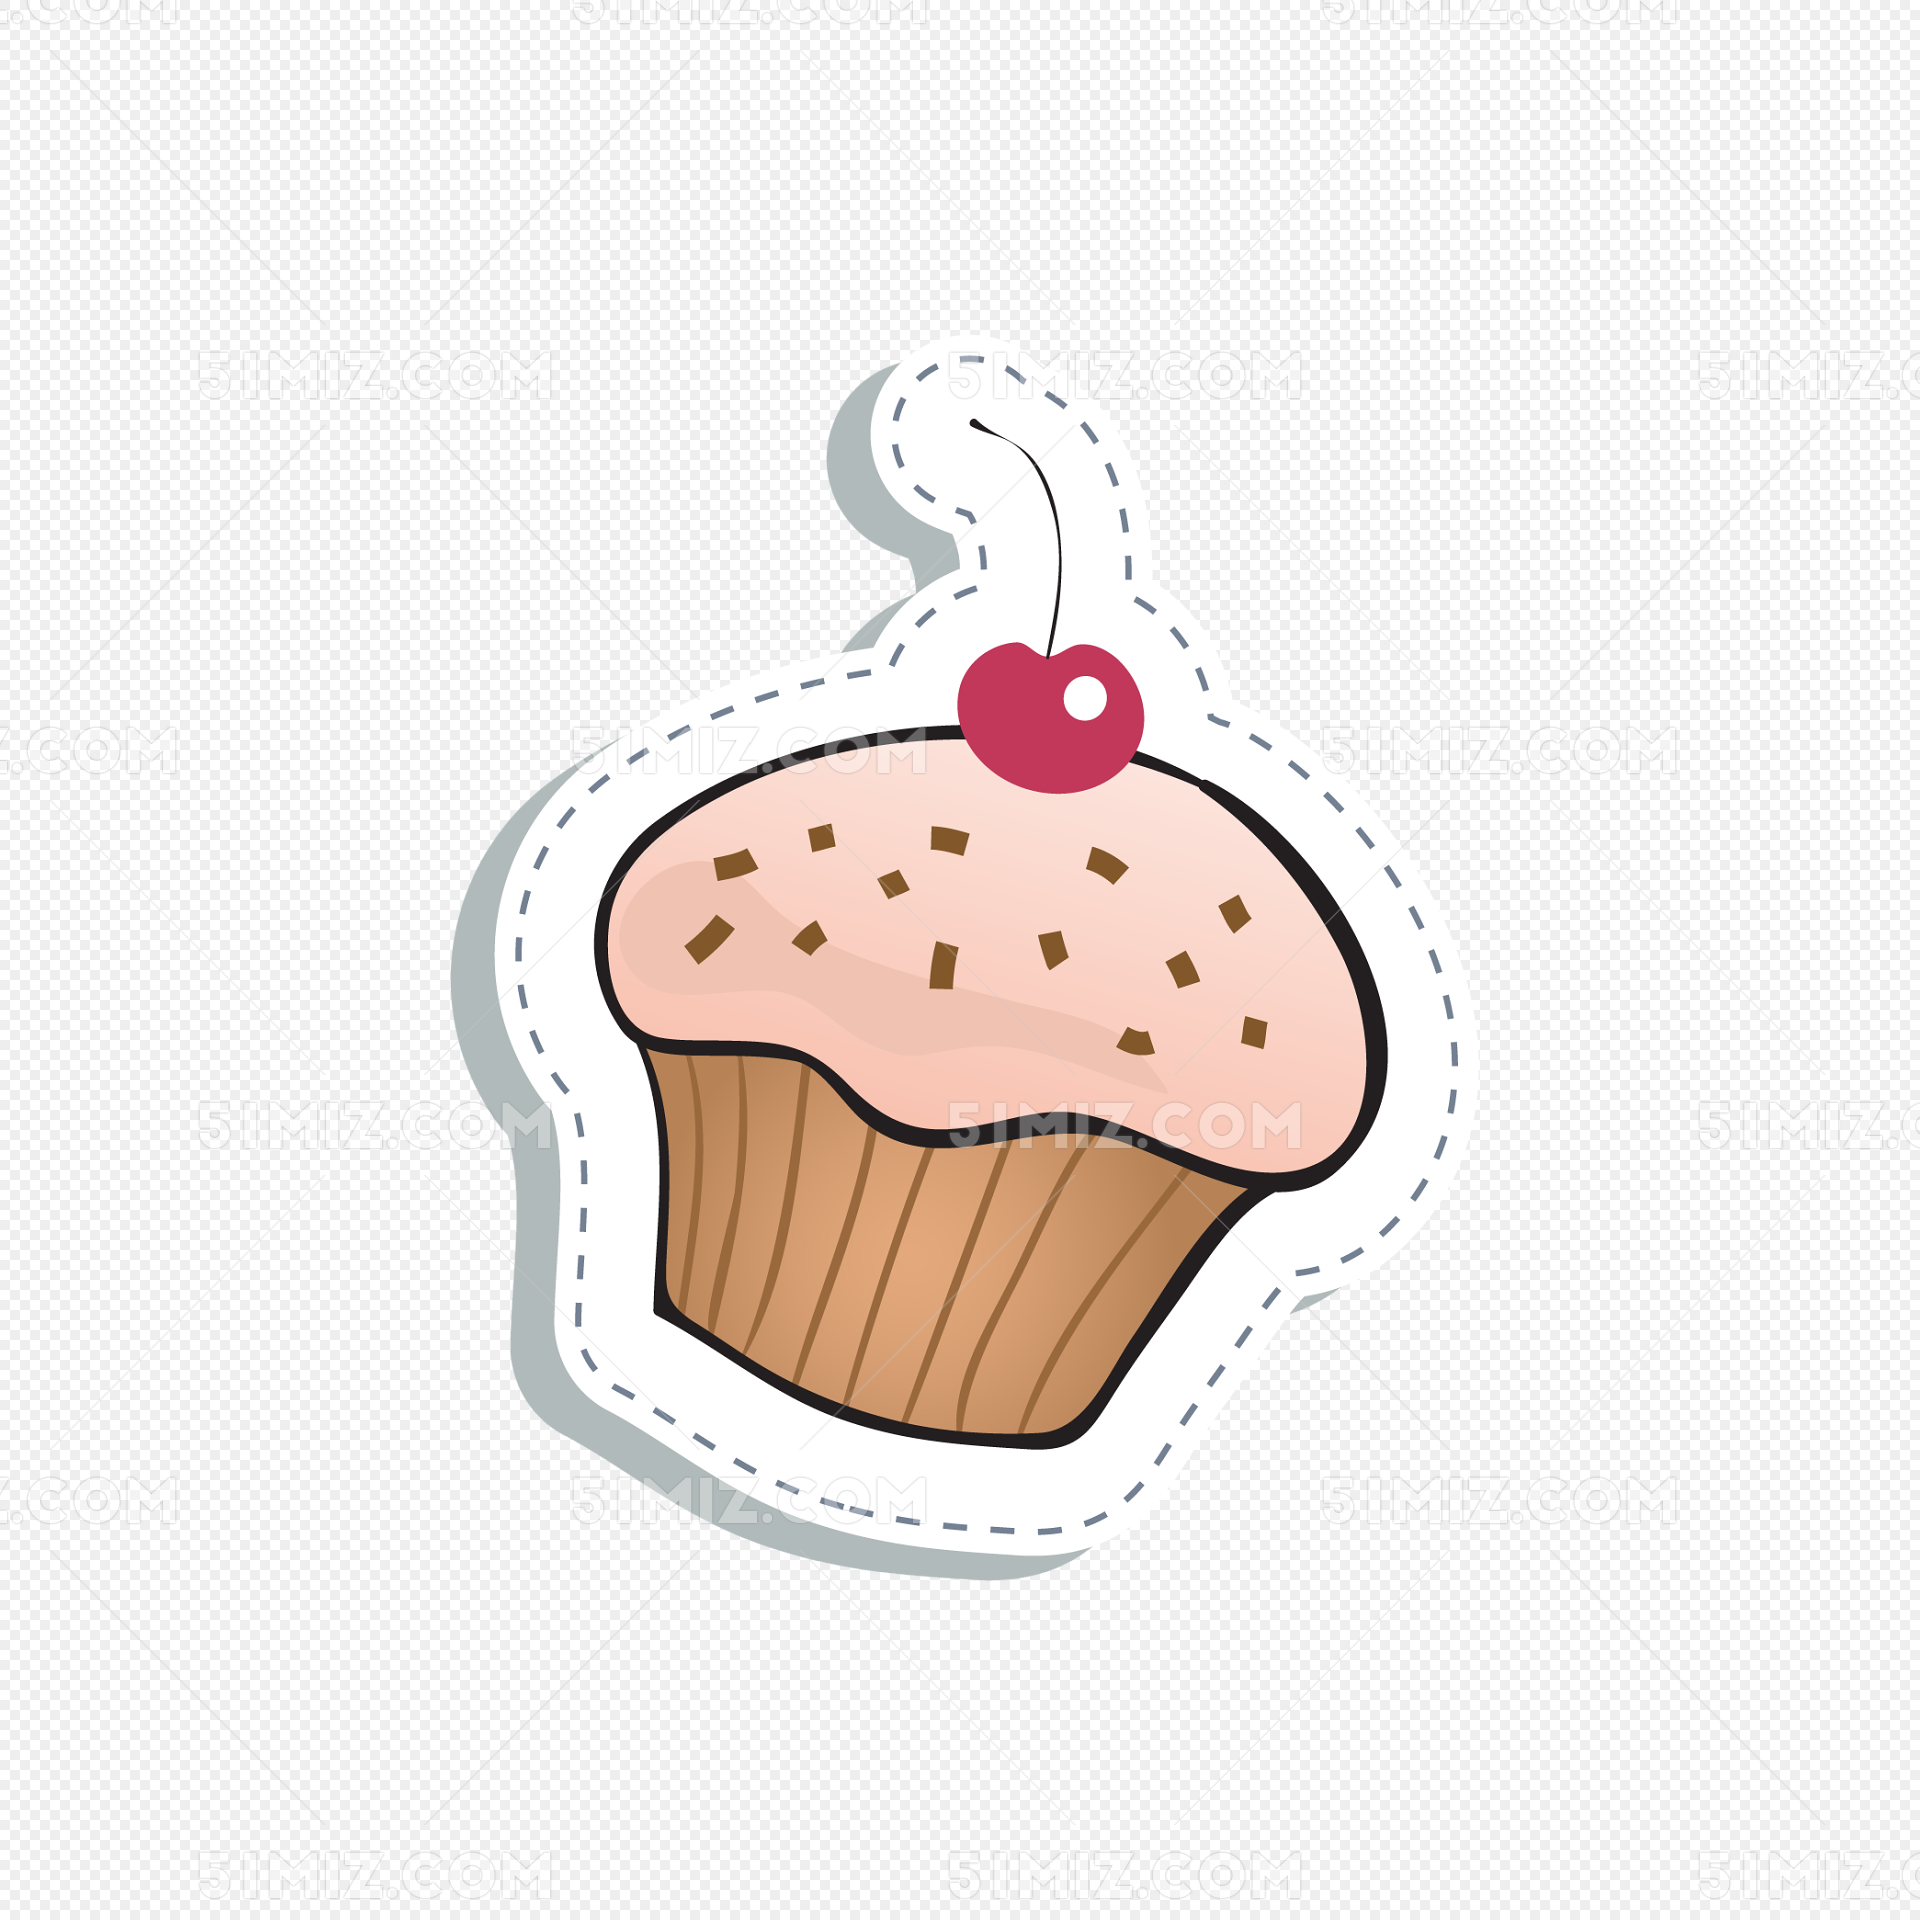 简洁手绘蛋糕LOGO图片素材免费下载 - 觅知网